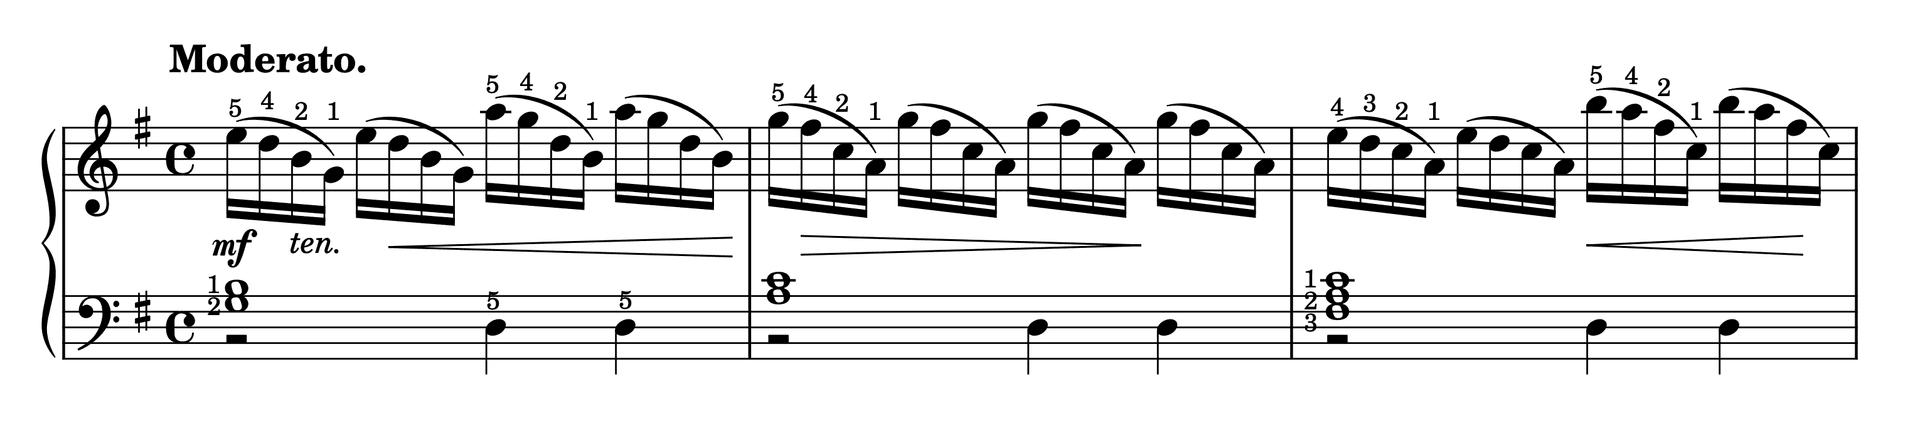 Excerpt of Etude in G Major Op. 37, No. 33